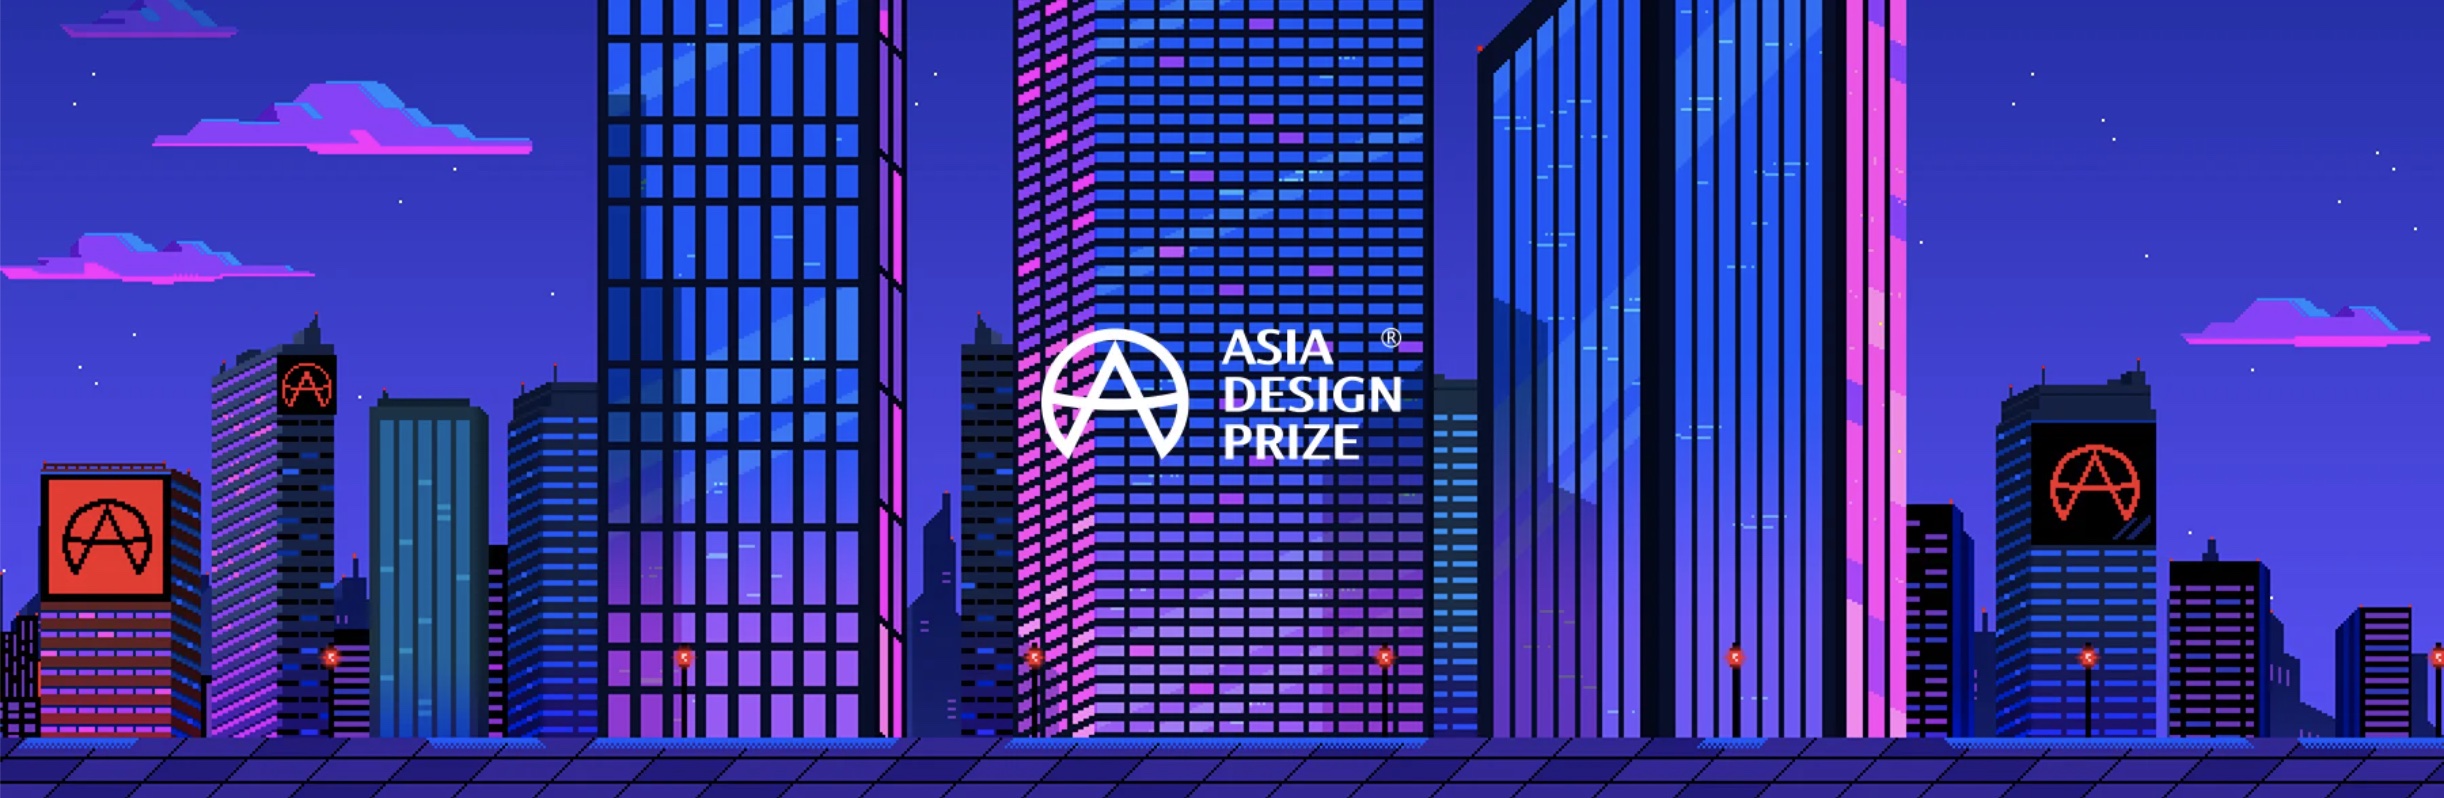 فراخوان جایزه طراحی آسیا 2022